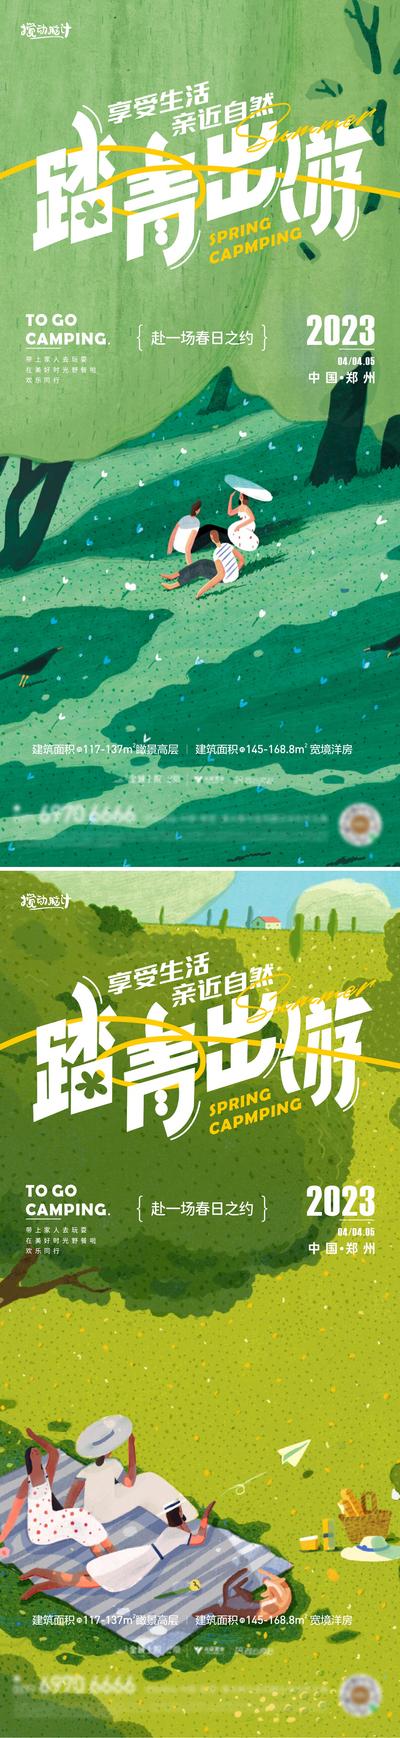 南门网 广告 海报 露营 踏青 野餐 出行 系列 插画 清新 品质